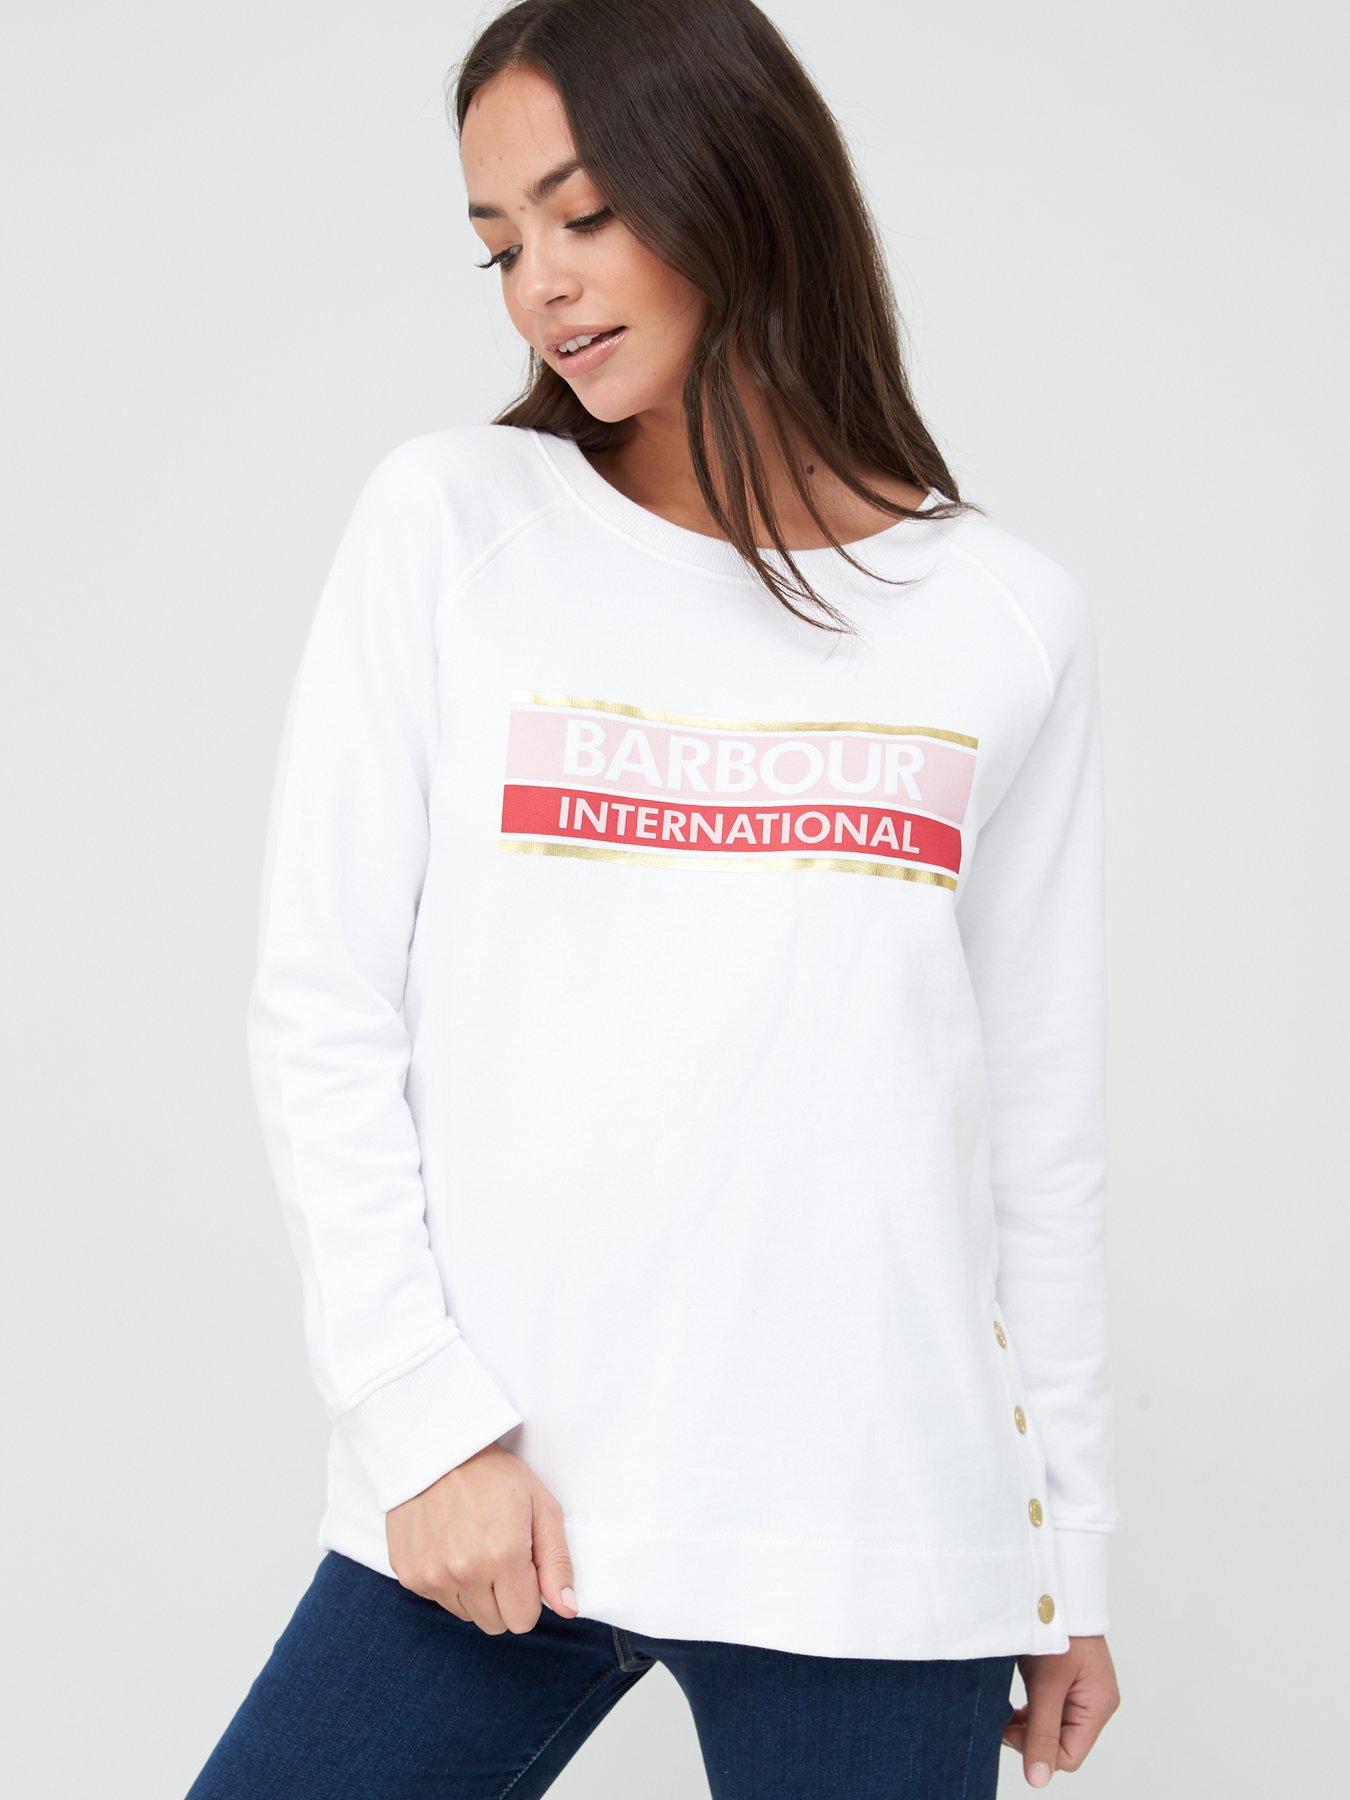 barbour international sweatshirt women's